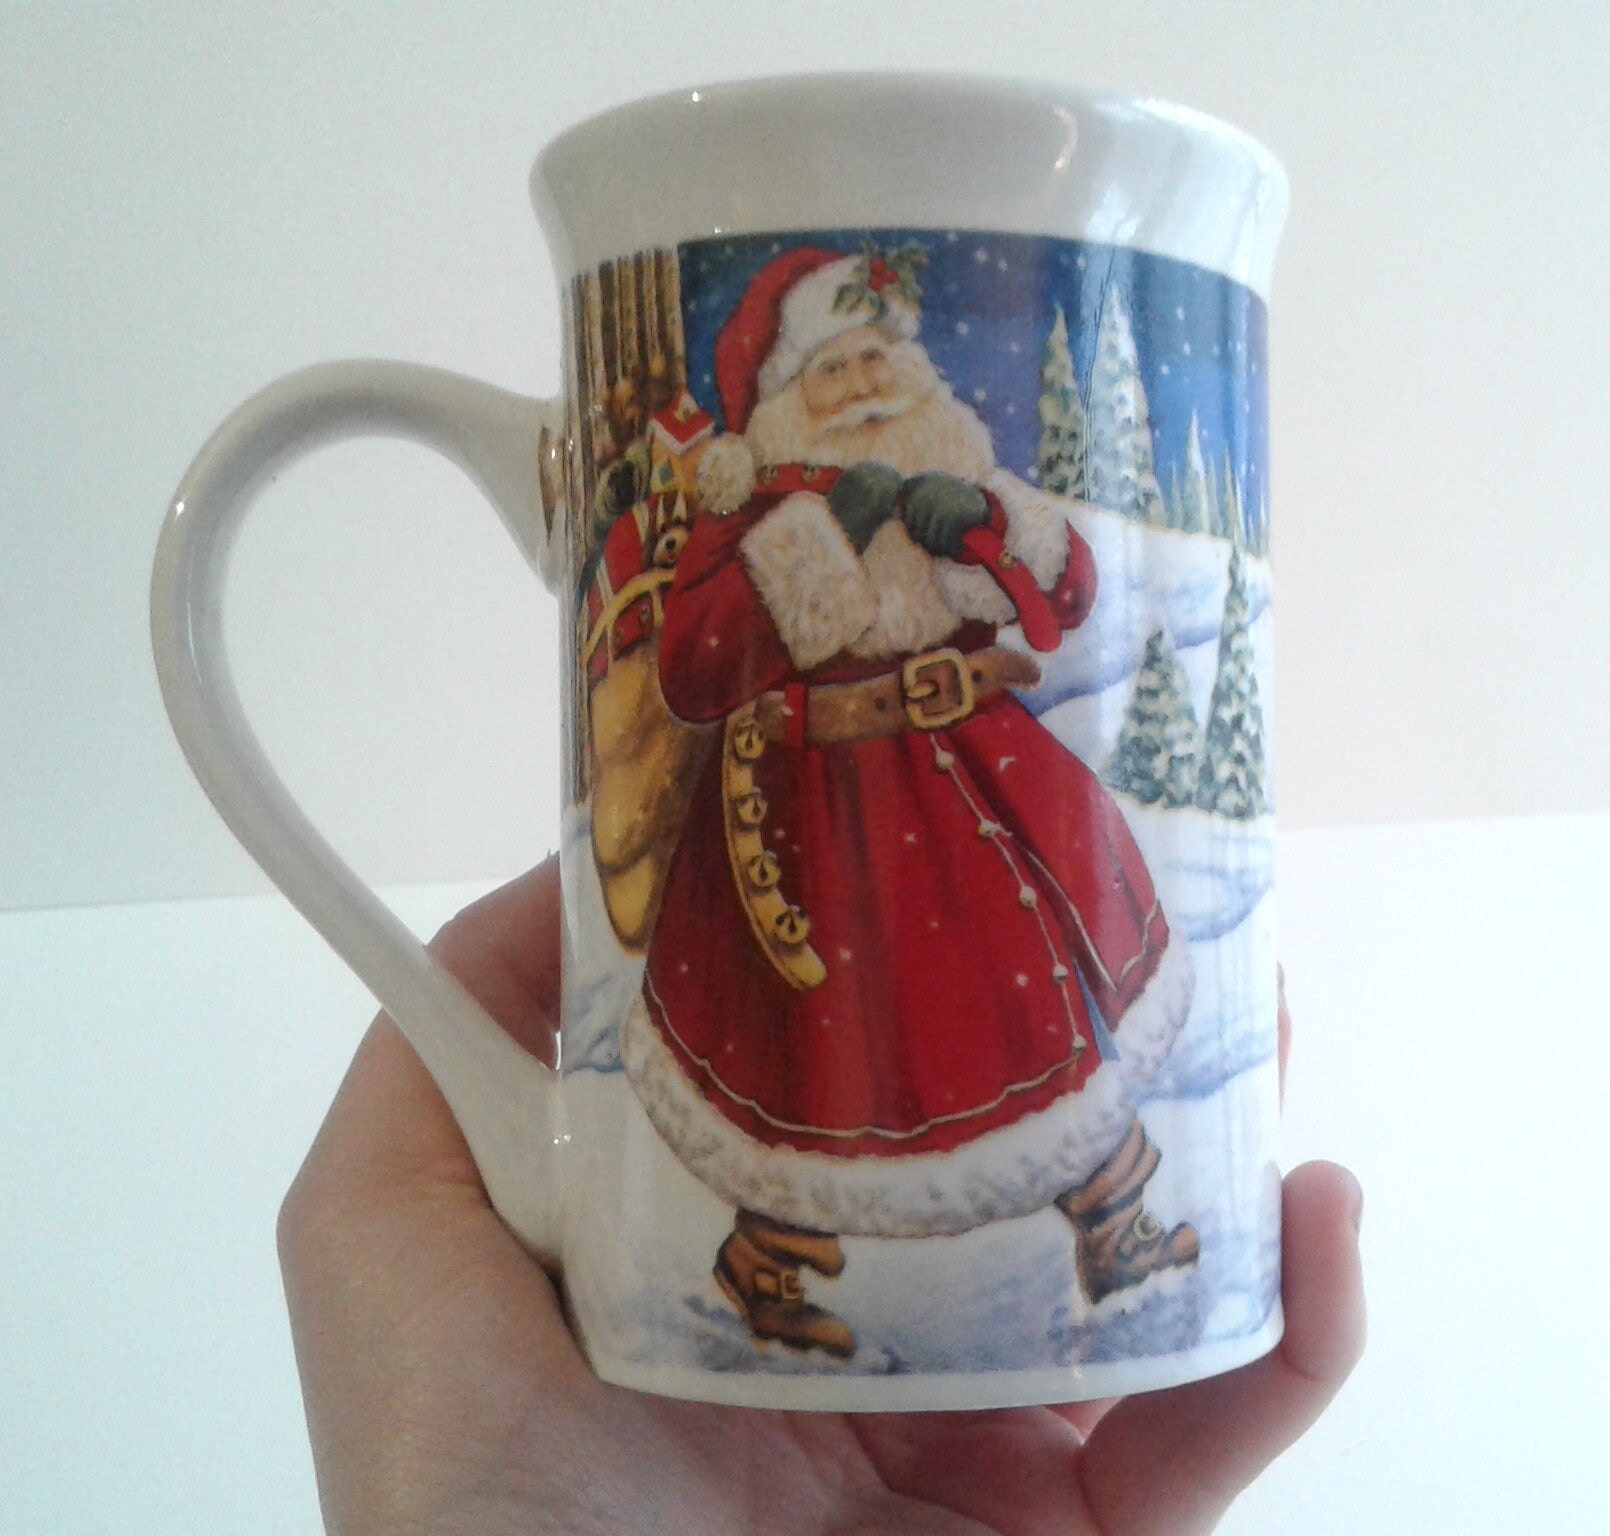 Joli Mug Père Noël en Ballade Dans Un Joli Paysage Enneigé. Mug de Noël. Décoration Fêtes Collection